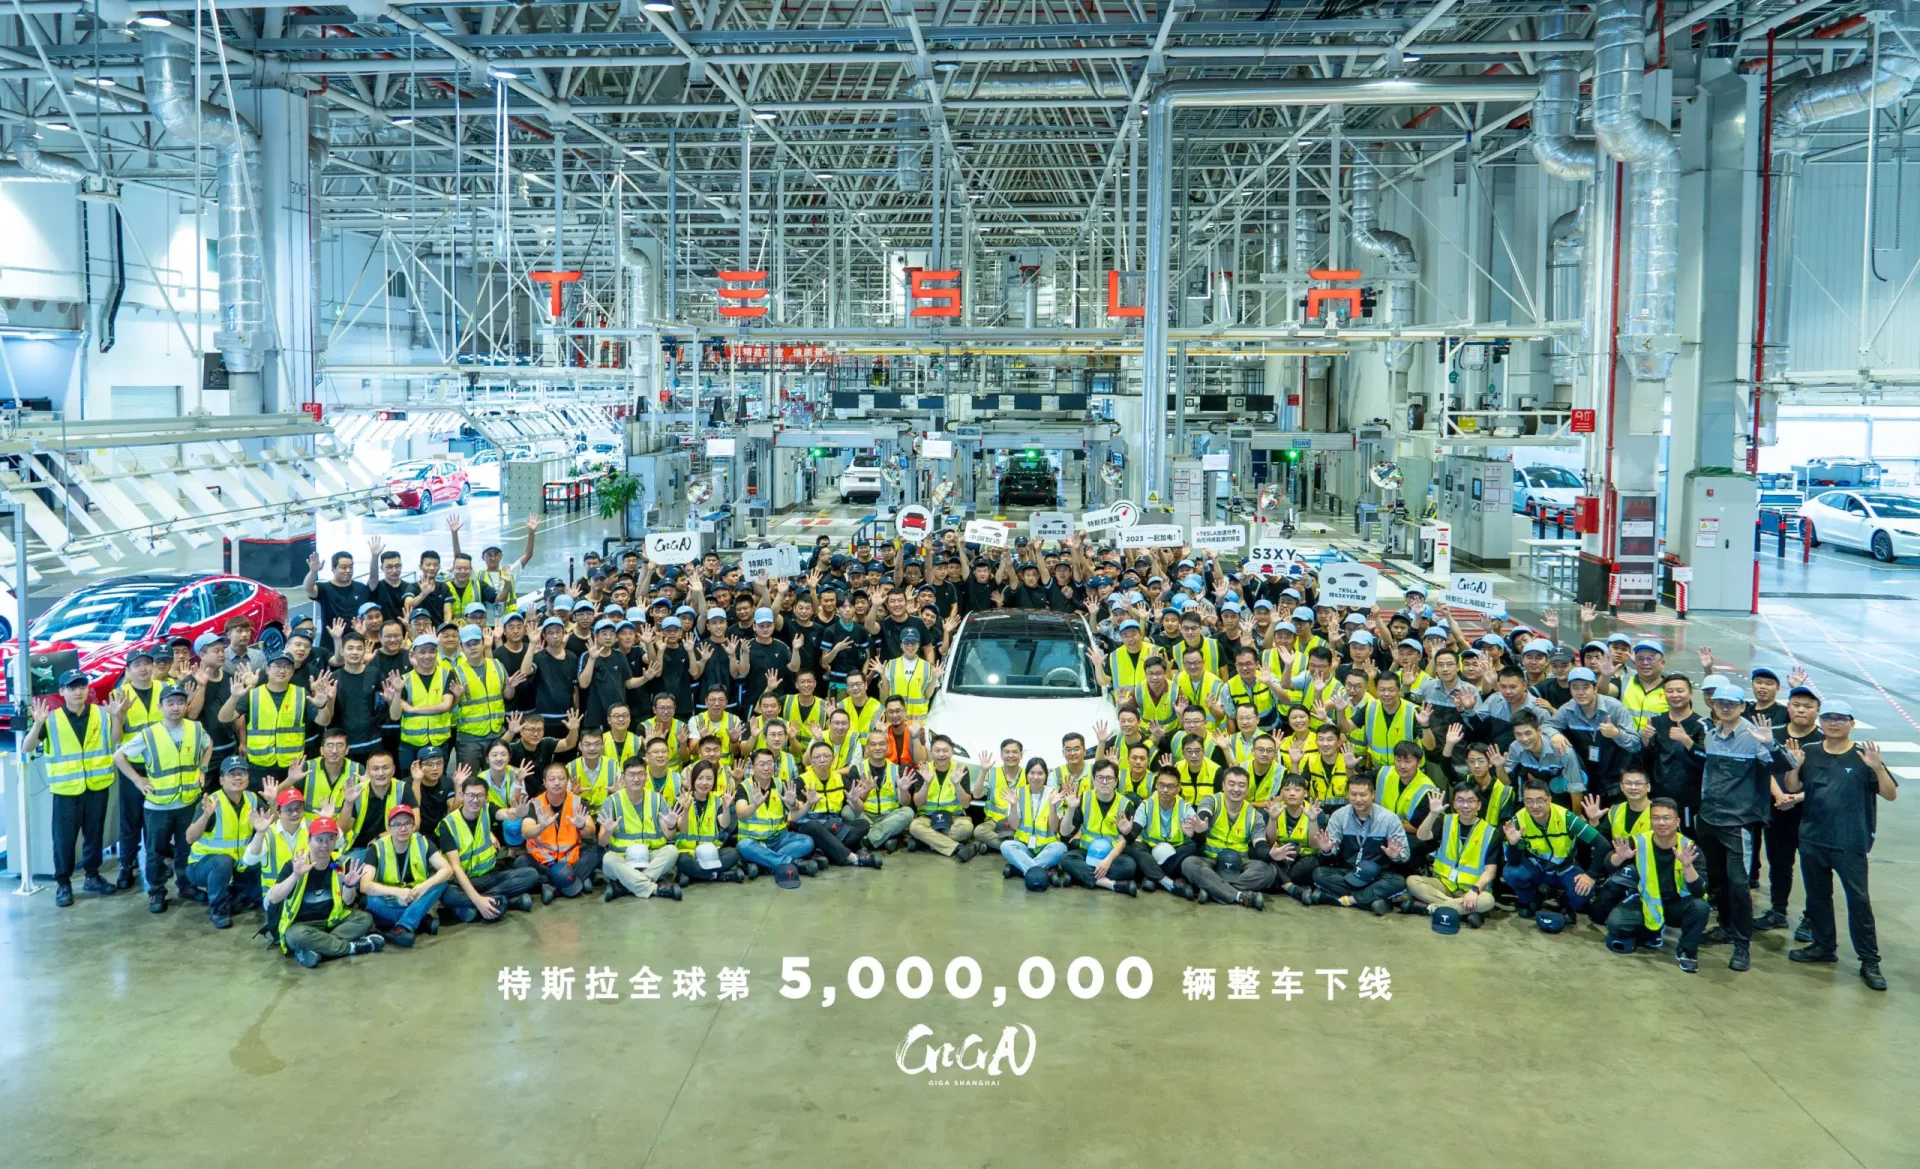 tesla ya ha fabricado 5 millones de vehículos: salió de la planta de china y fue un model 3